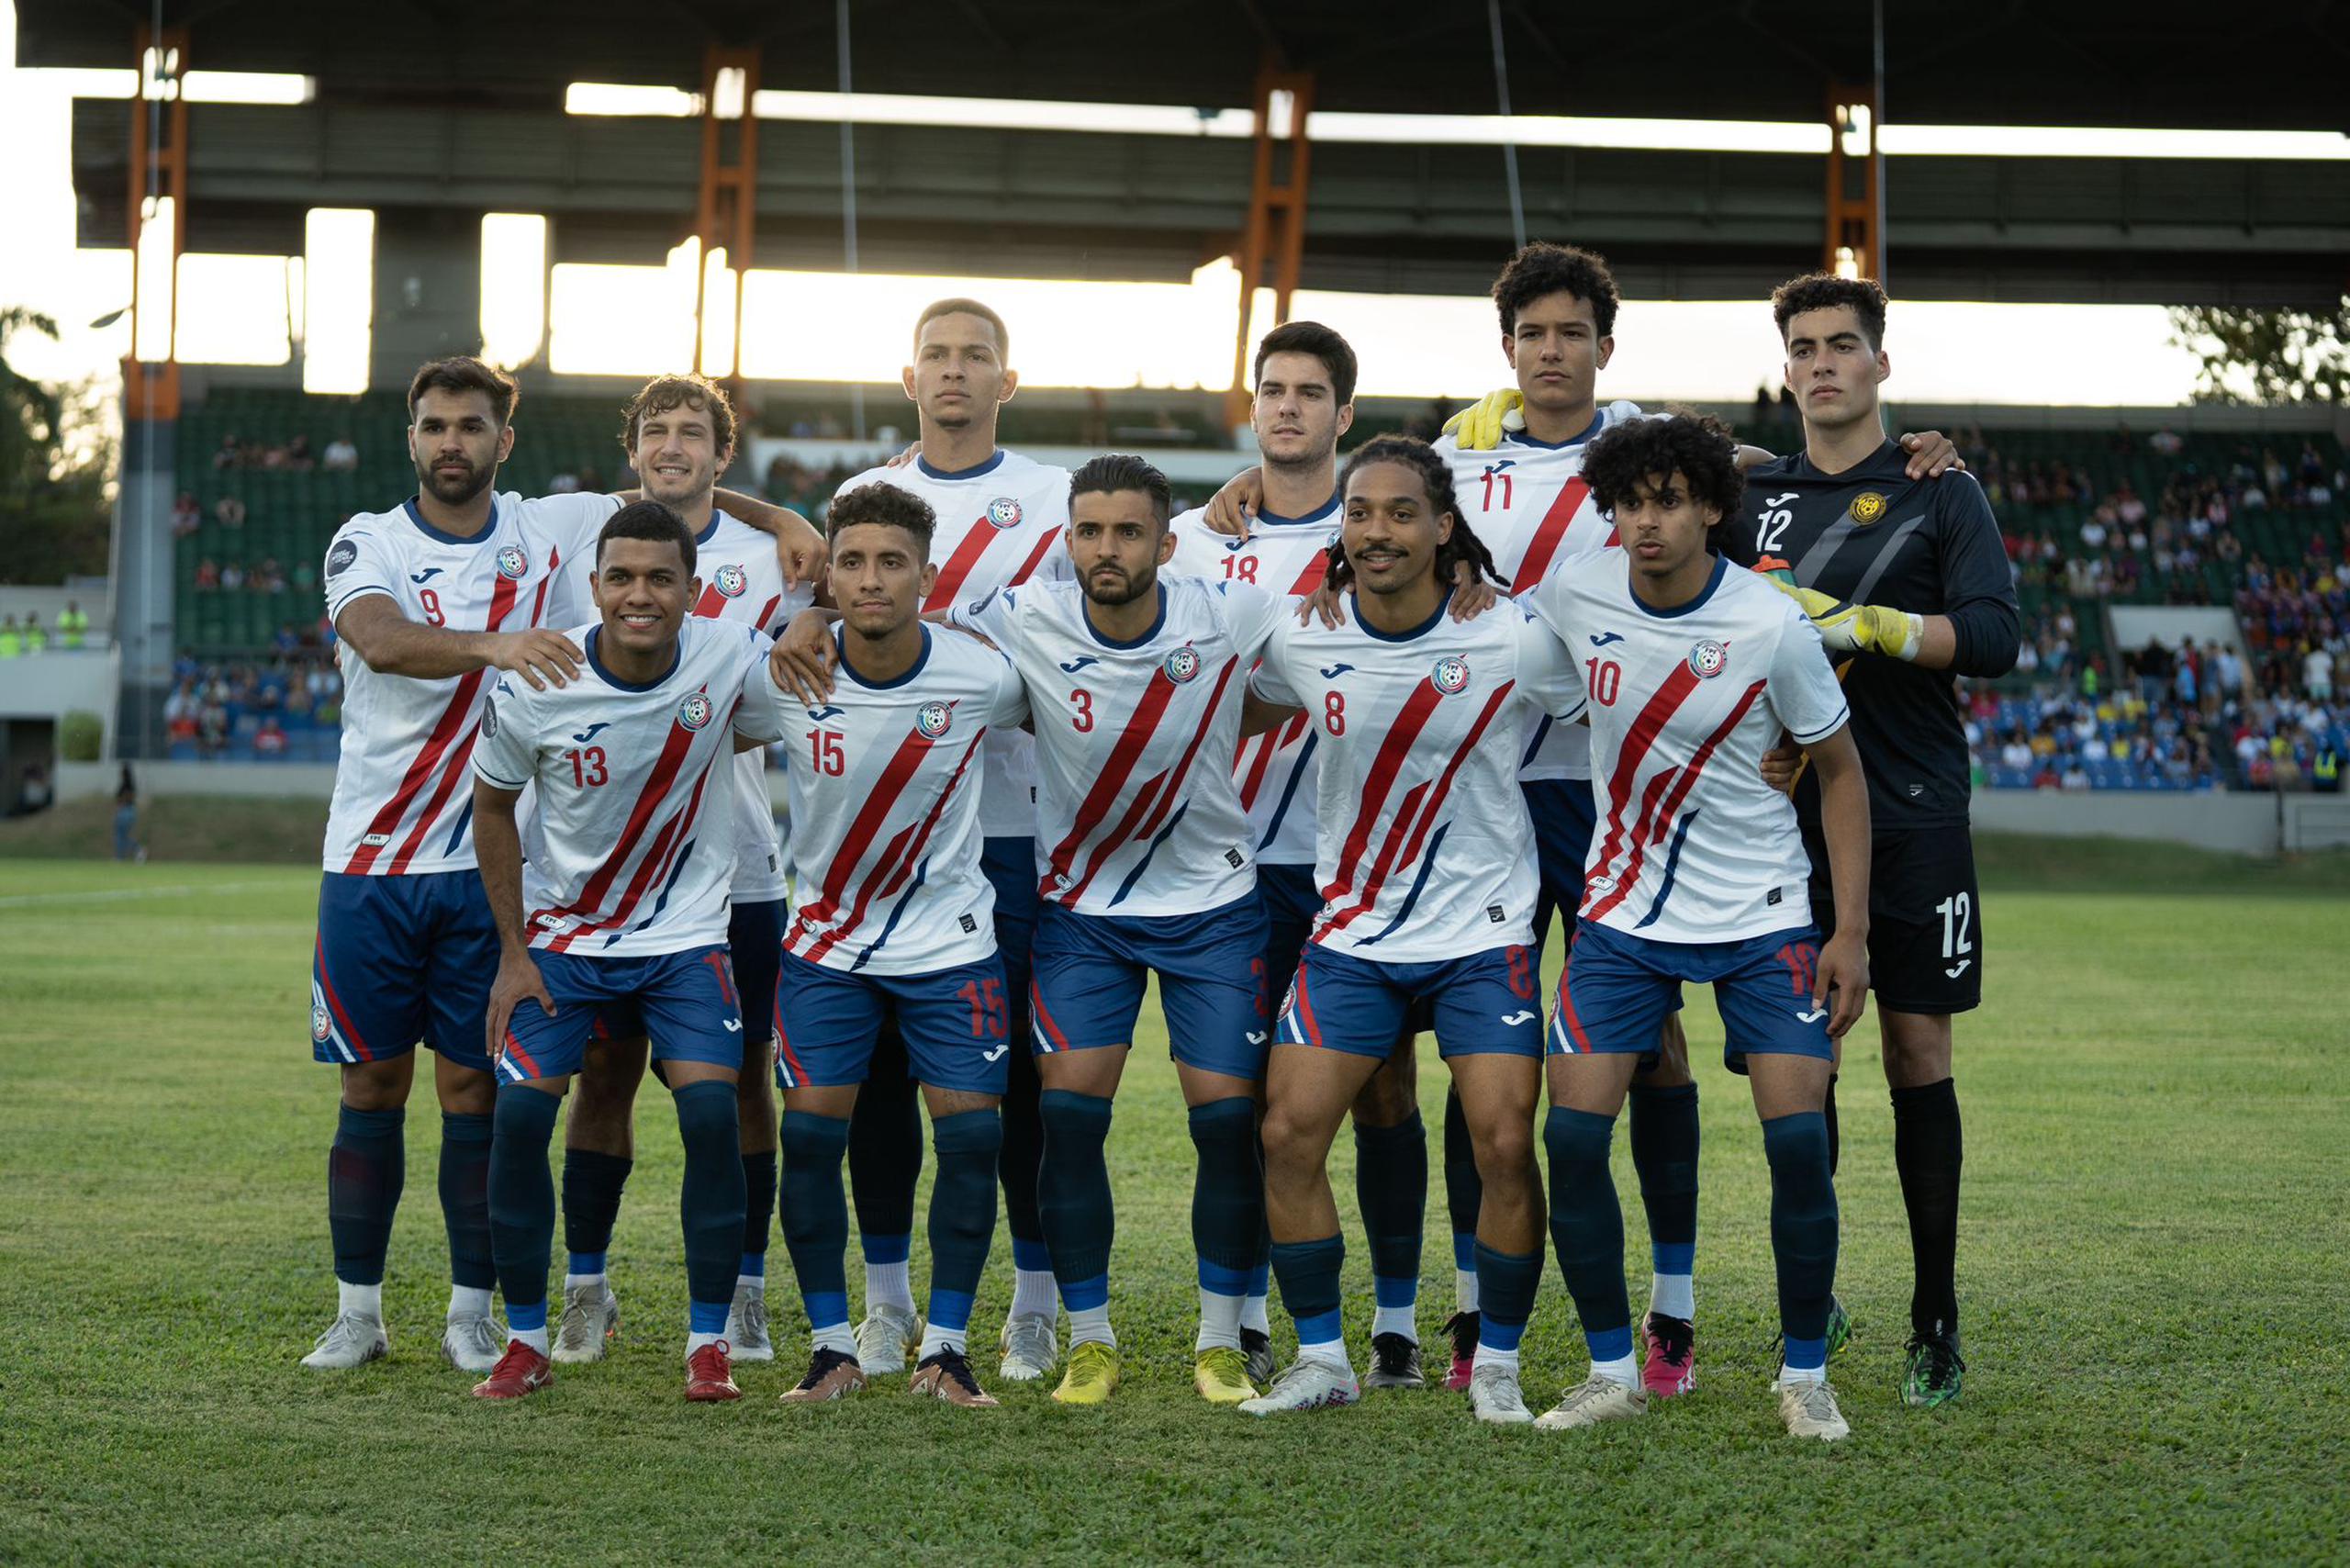 El Equipo Nacional de Fútbol de Puerto Rico jugó para 4-0 la Liga C de Naciones de la Concacaf y así ha ganado el ascenso a la Liga B para la próxima campaña. (Twitter / @fpfpuertorico